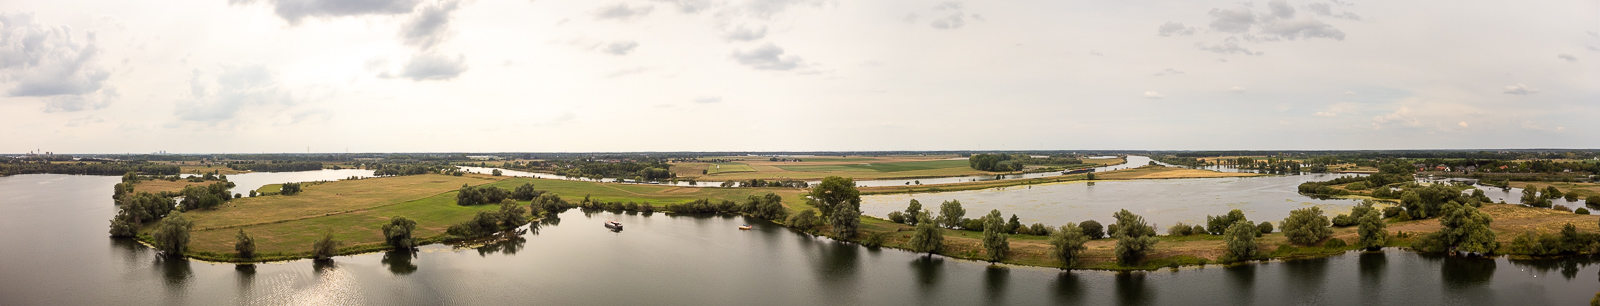 Luchtfoto van de Asseltse plassen met de Koffie-baai en de Maas.